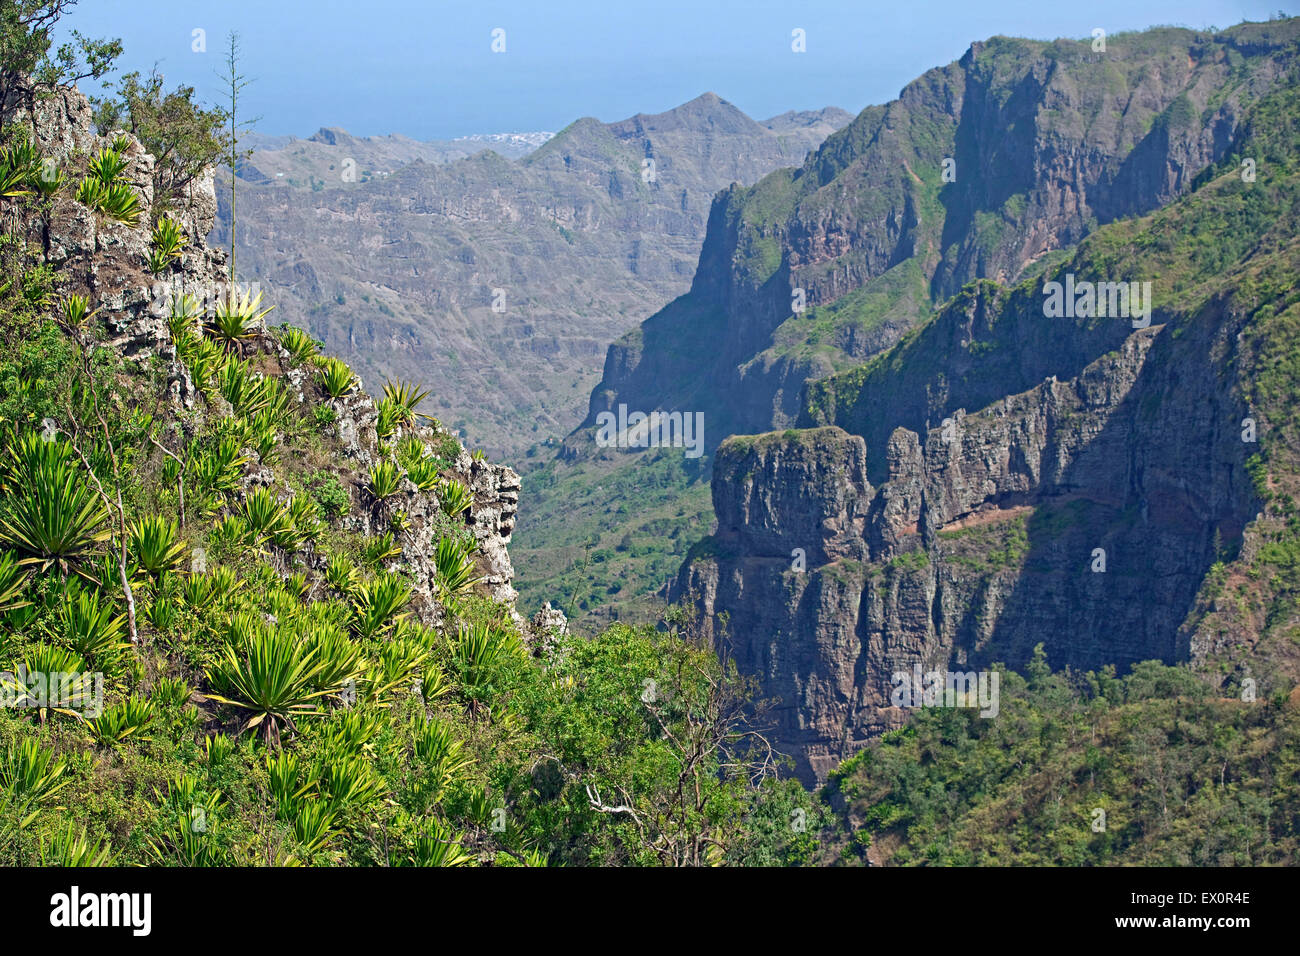 Les plantes d'Agave sur pente de montagne dans l'intérieur de l'île volcanique de Santiago, au Cap-Vert / Cabo Verde, l'Afrique Banque D'Images